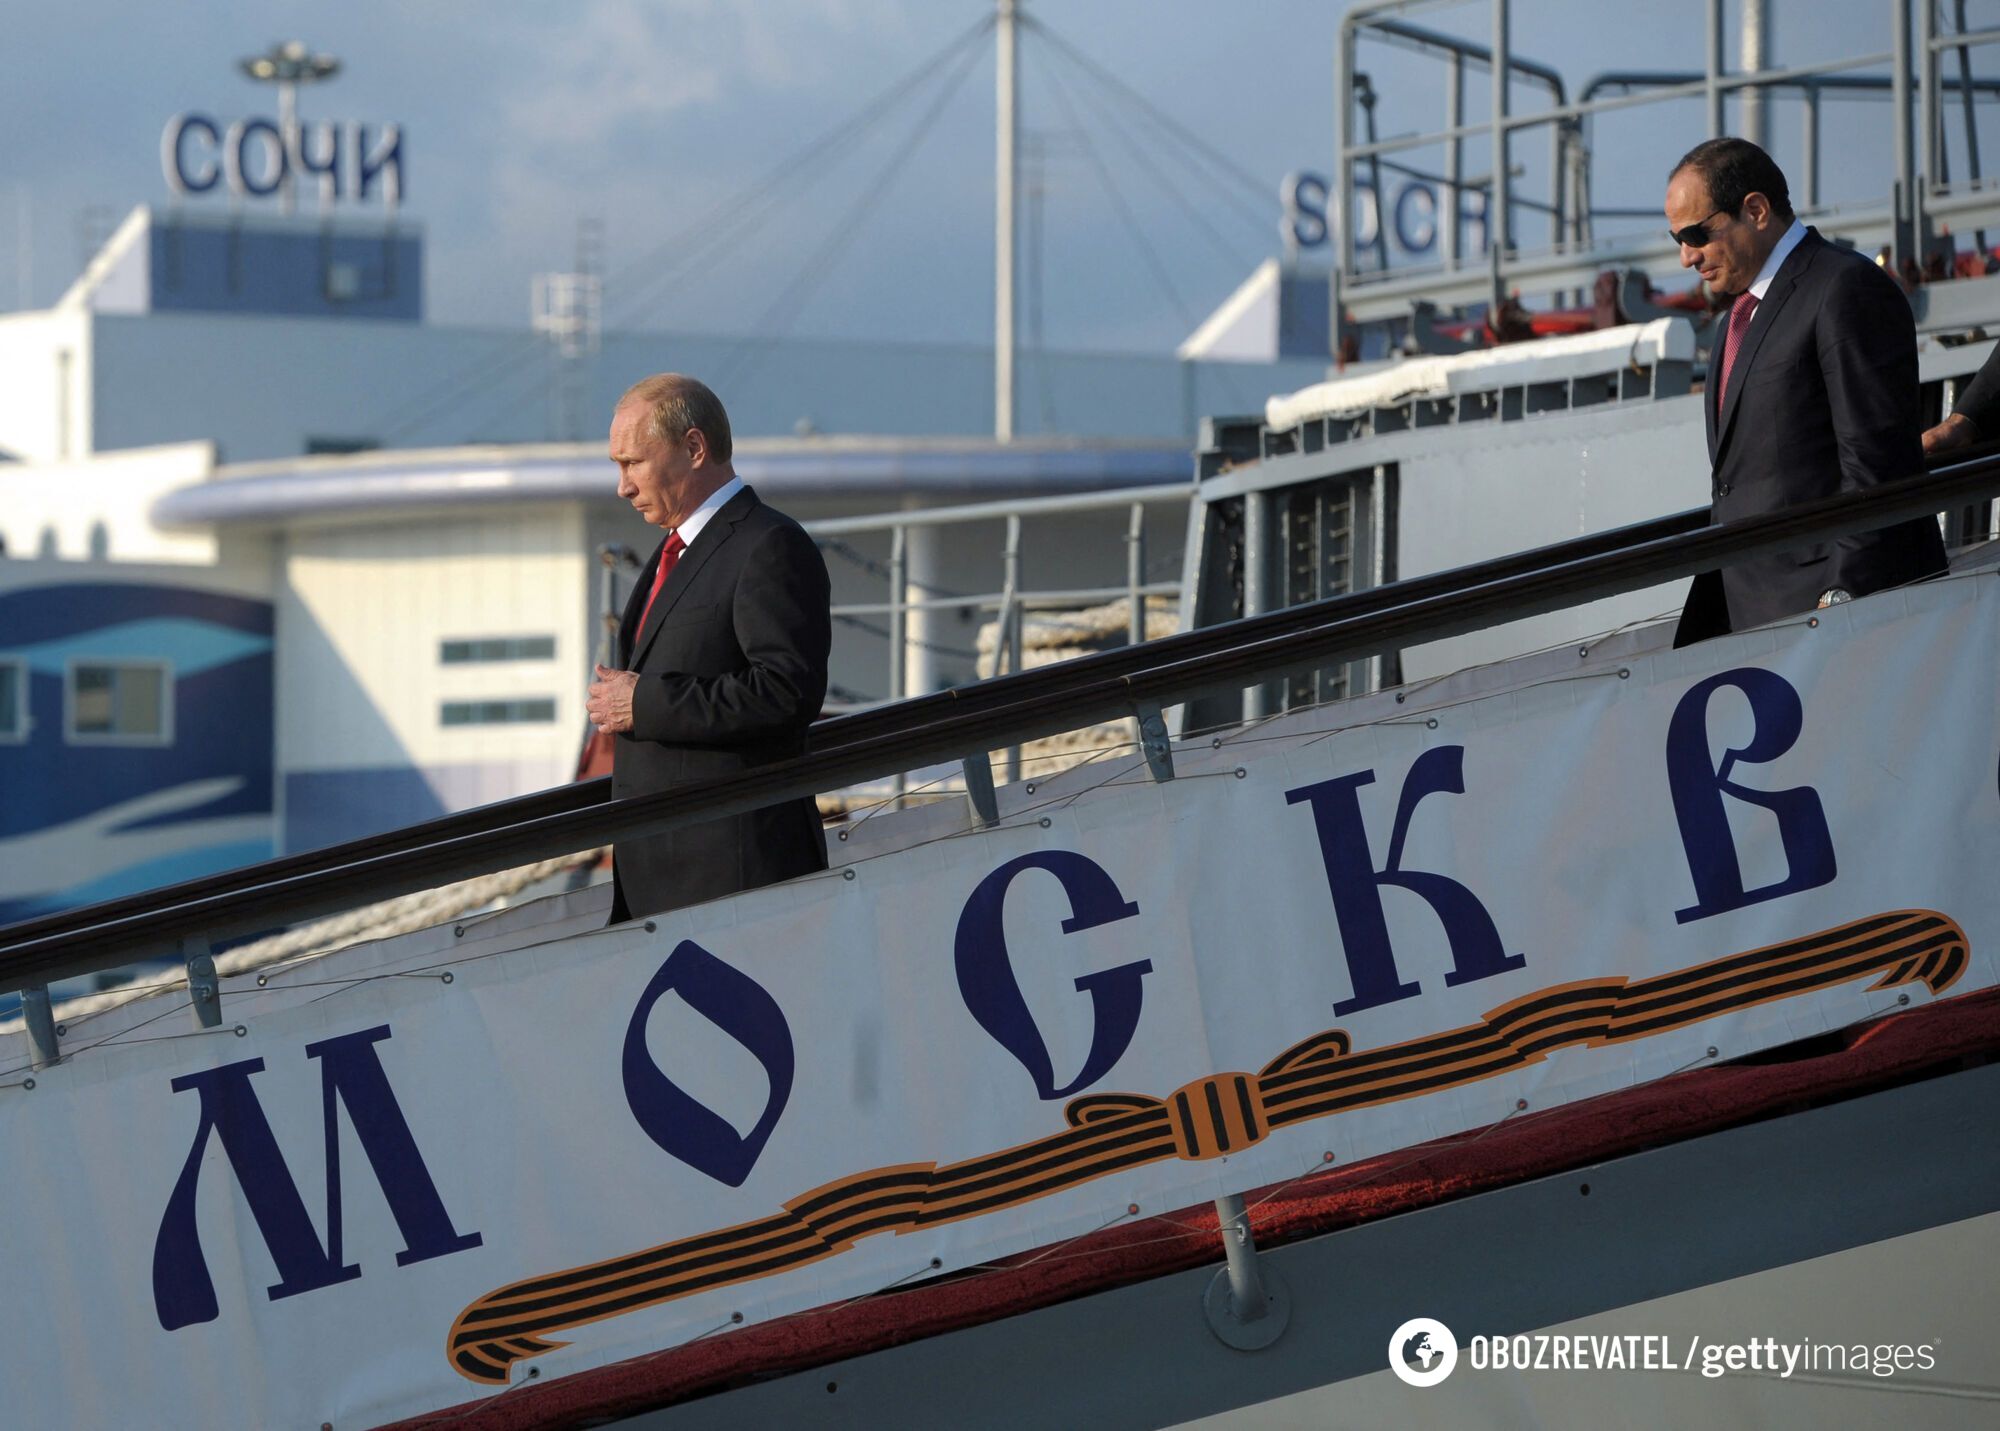 Putin i prezydent Egiptu Abdel Fattah al-Sisi (R) opuszczają krążownik rakietowy Moskwa w porcie w Soczi, 12 sierpnia 2014 r.